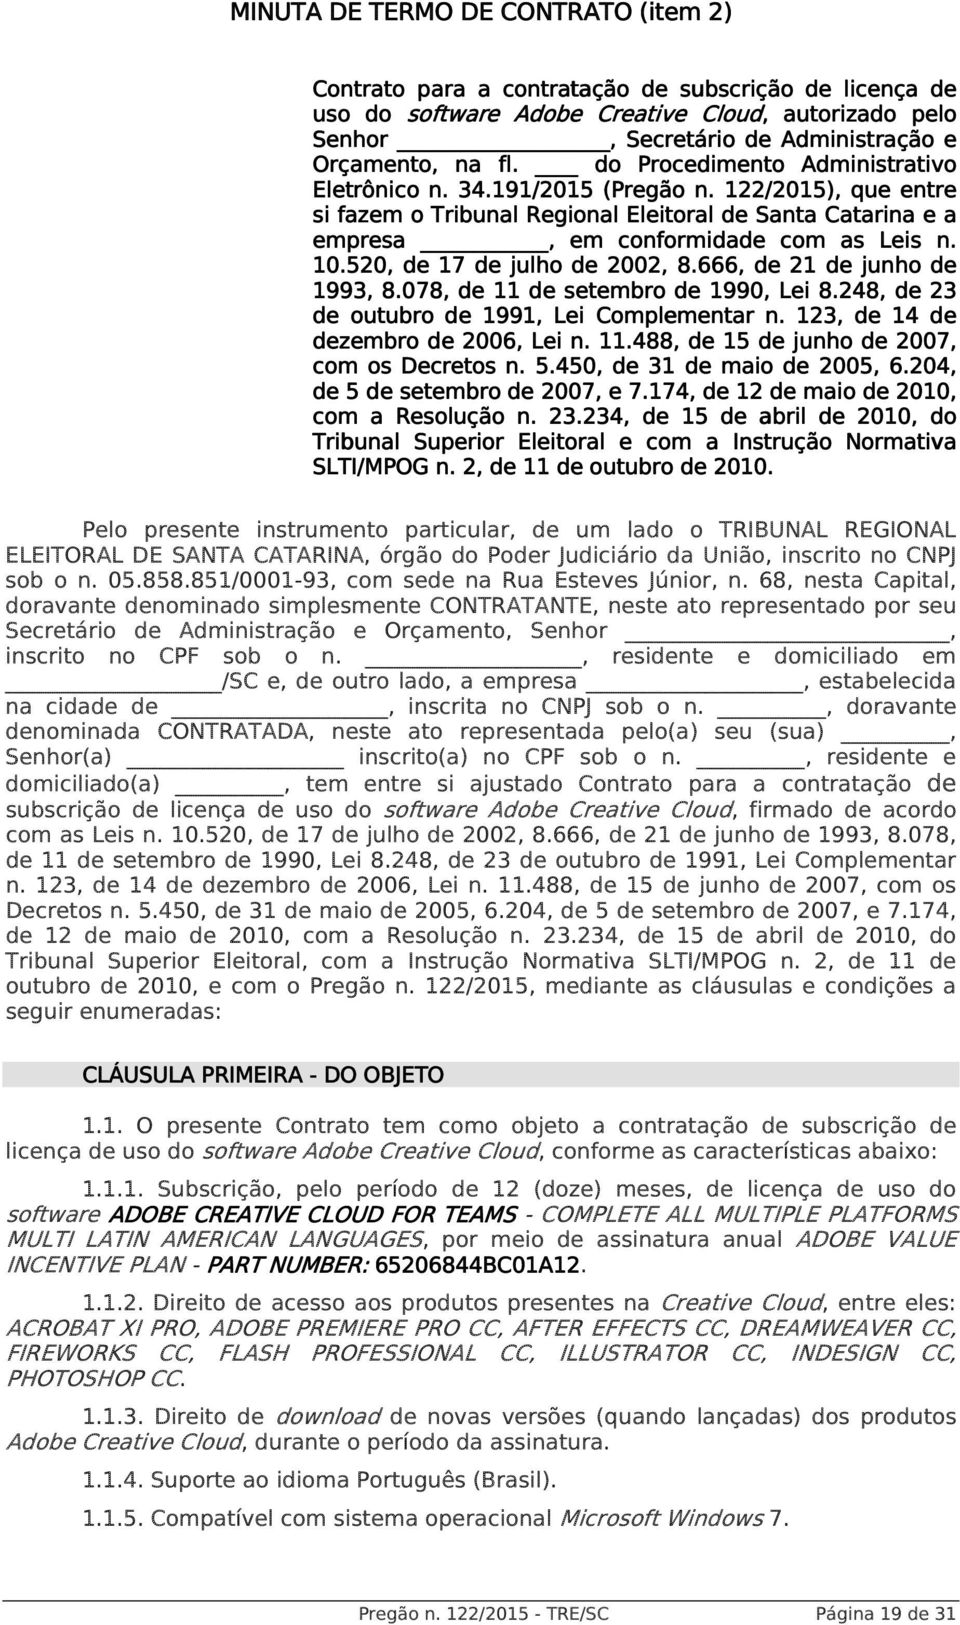 122/2015), que entre e si fazem o Tribunal Regional Eleitoral de Santa Catarina e a empresa, em conformidade com as Leis n. 10.520, de 17 de julho de 2002, 8.666, de 21 de junho de 1993, 8.